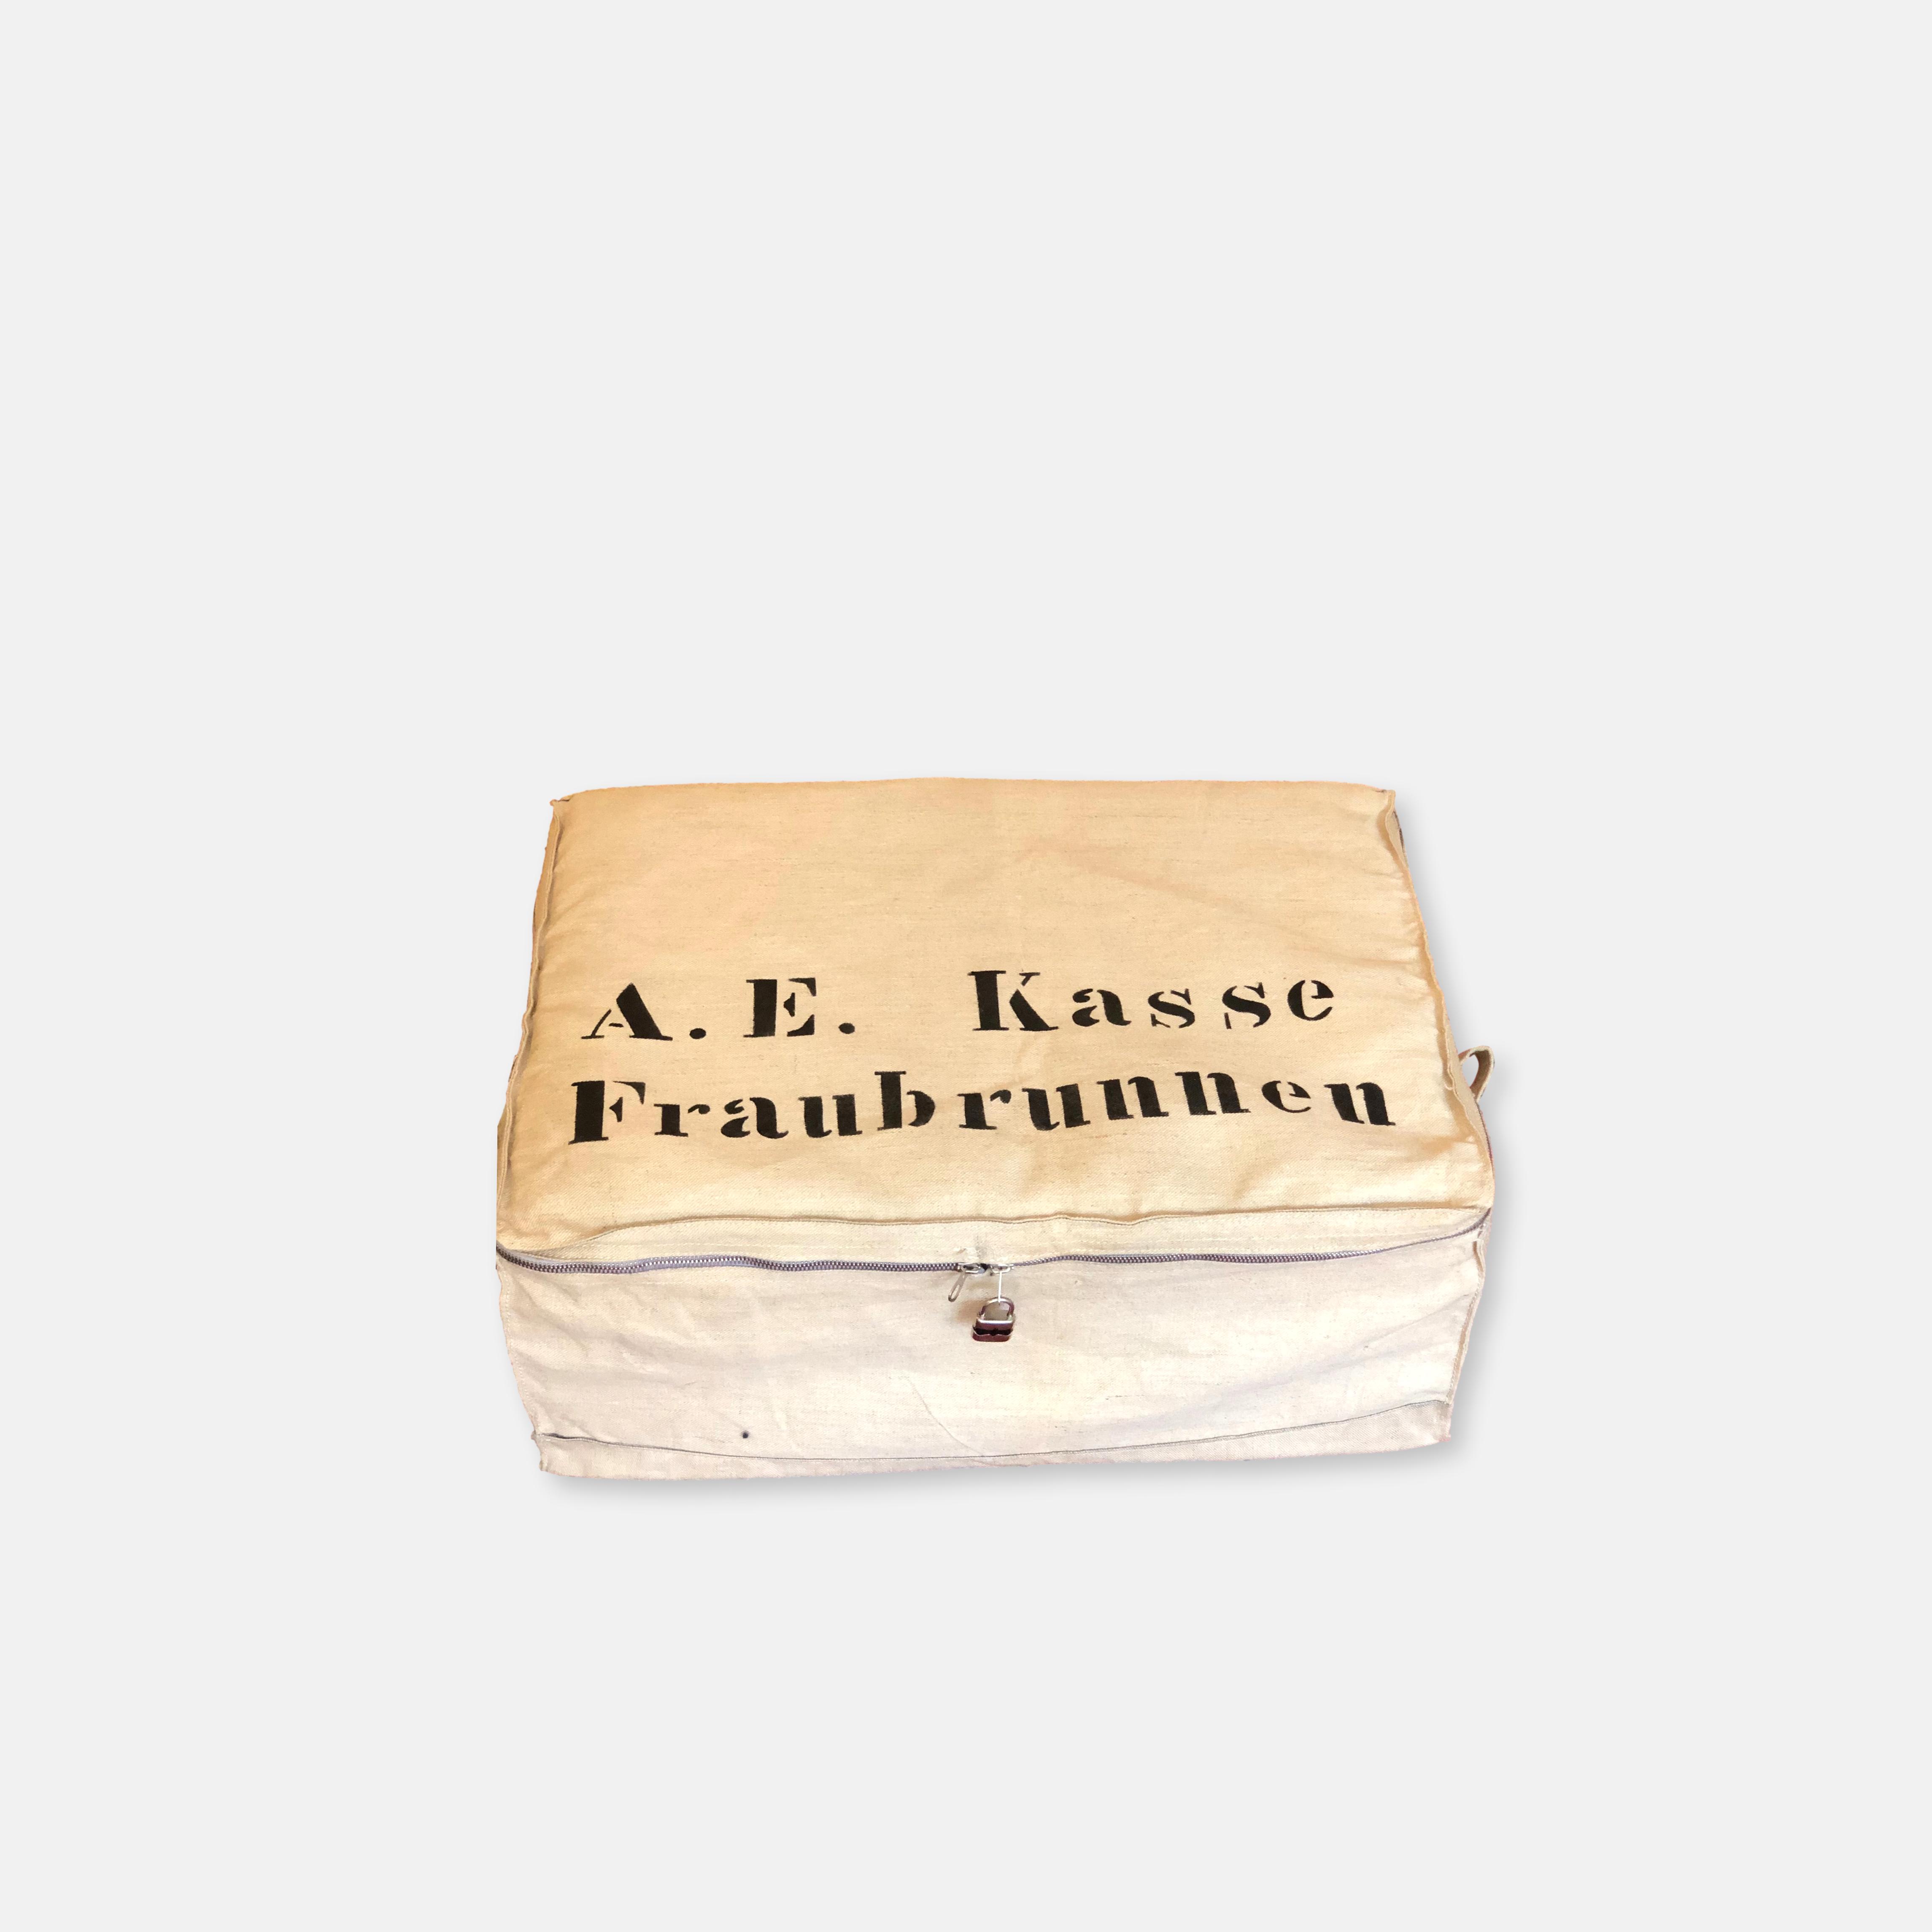 Coussin - Pouf fait à partir d'un sac de banque - A. E. Kasse Fraubrunnen